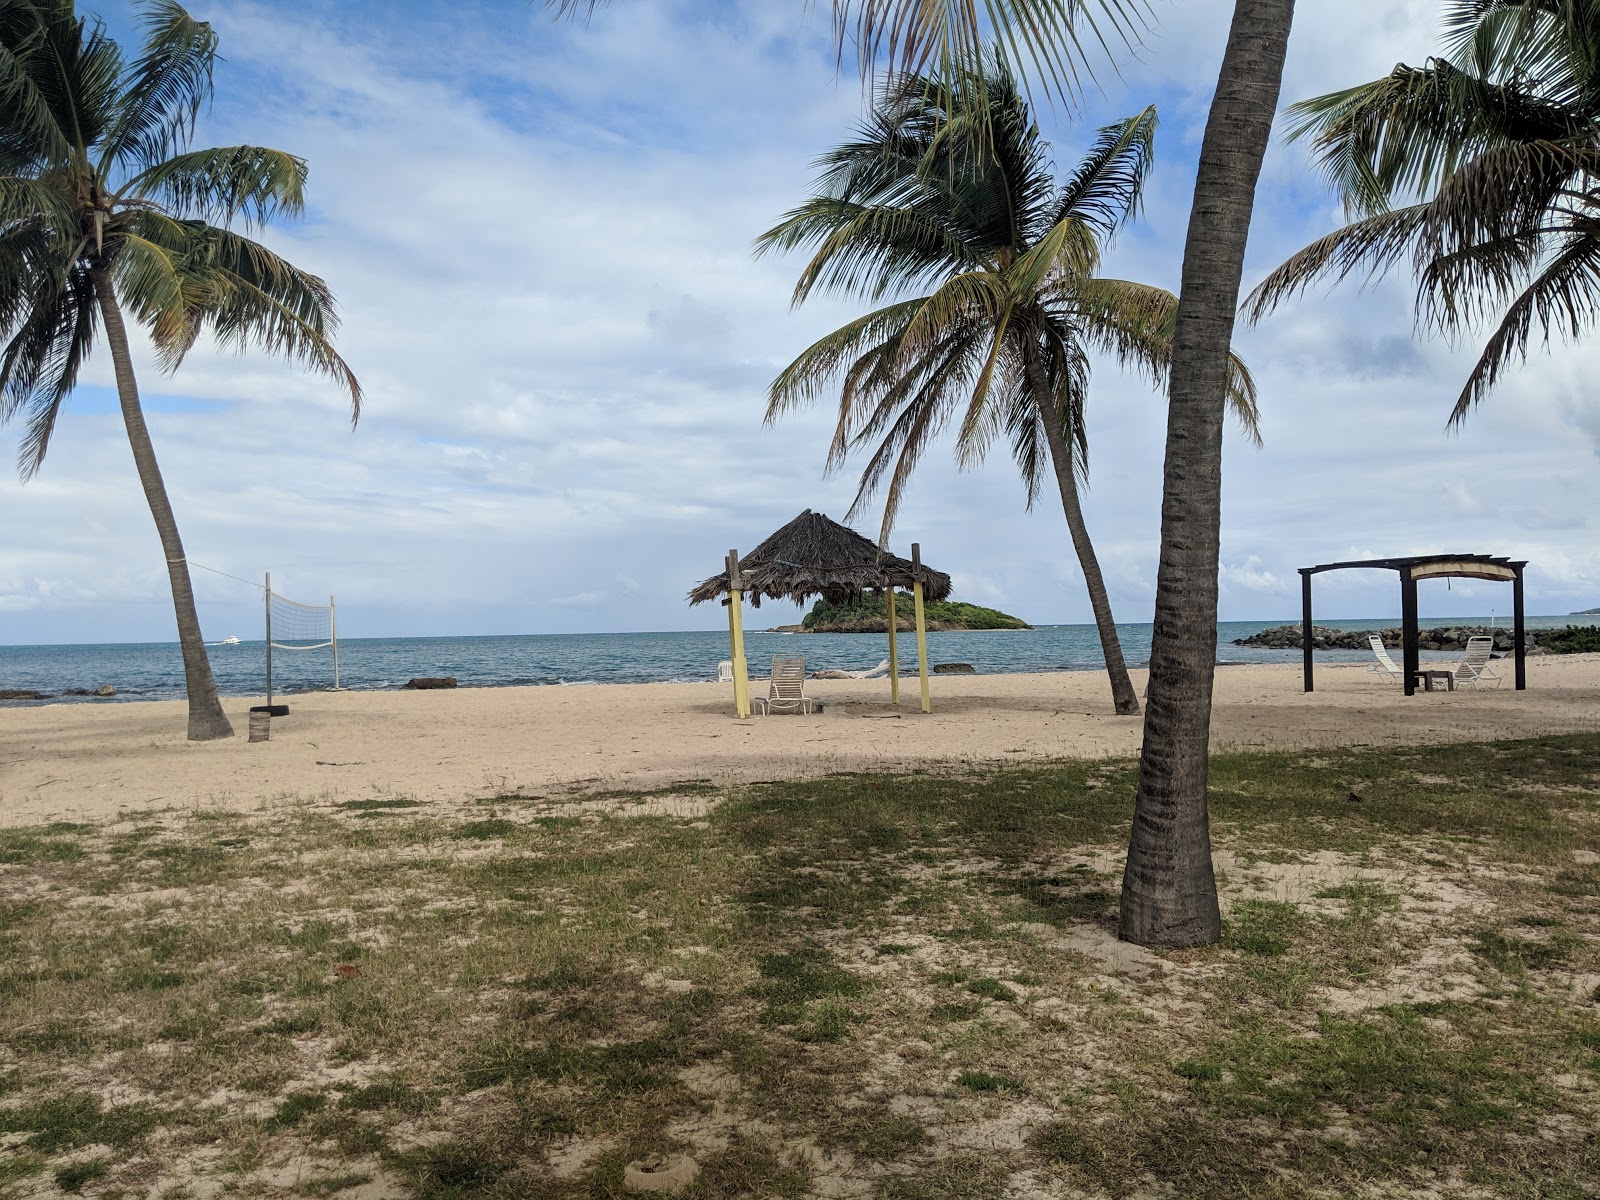 Tamarind Reef beach II'in fotoğrafı doğrudan plaj ile birlikte